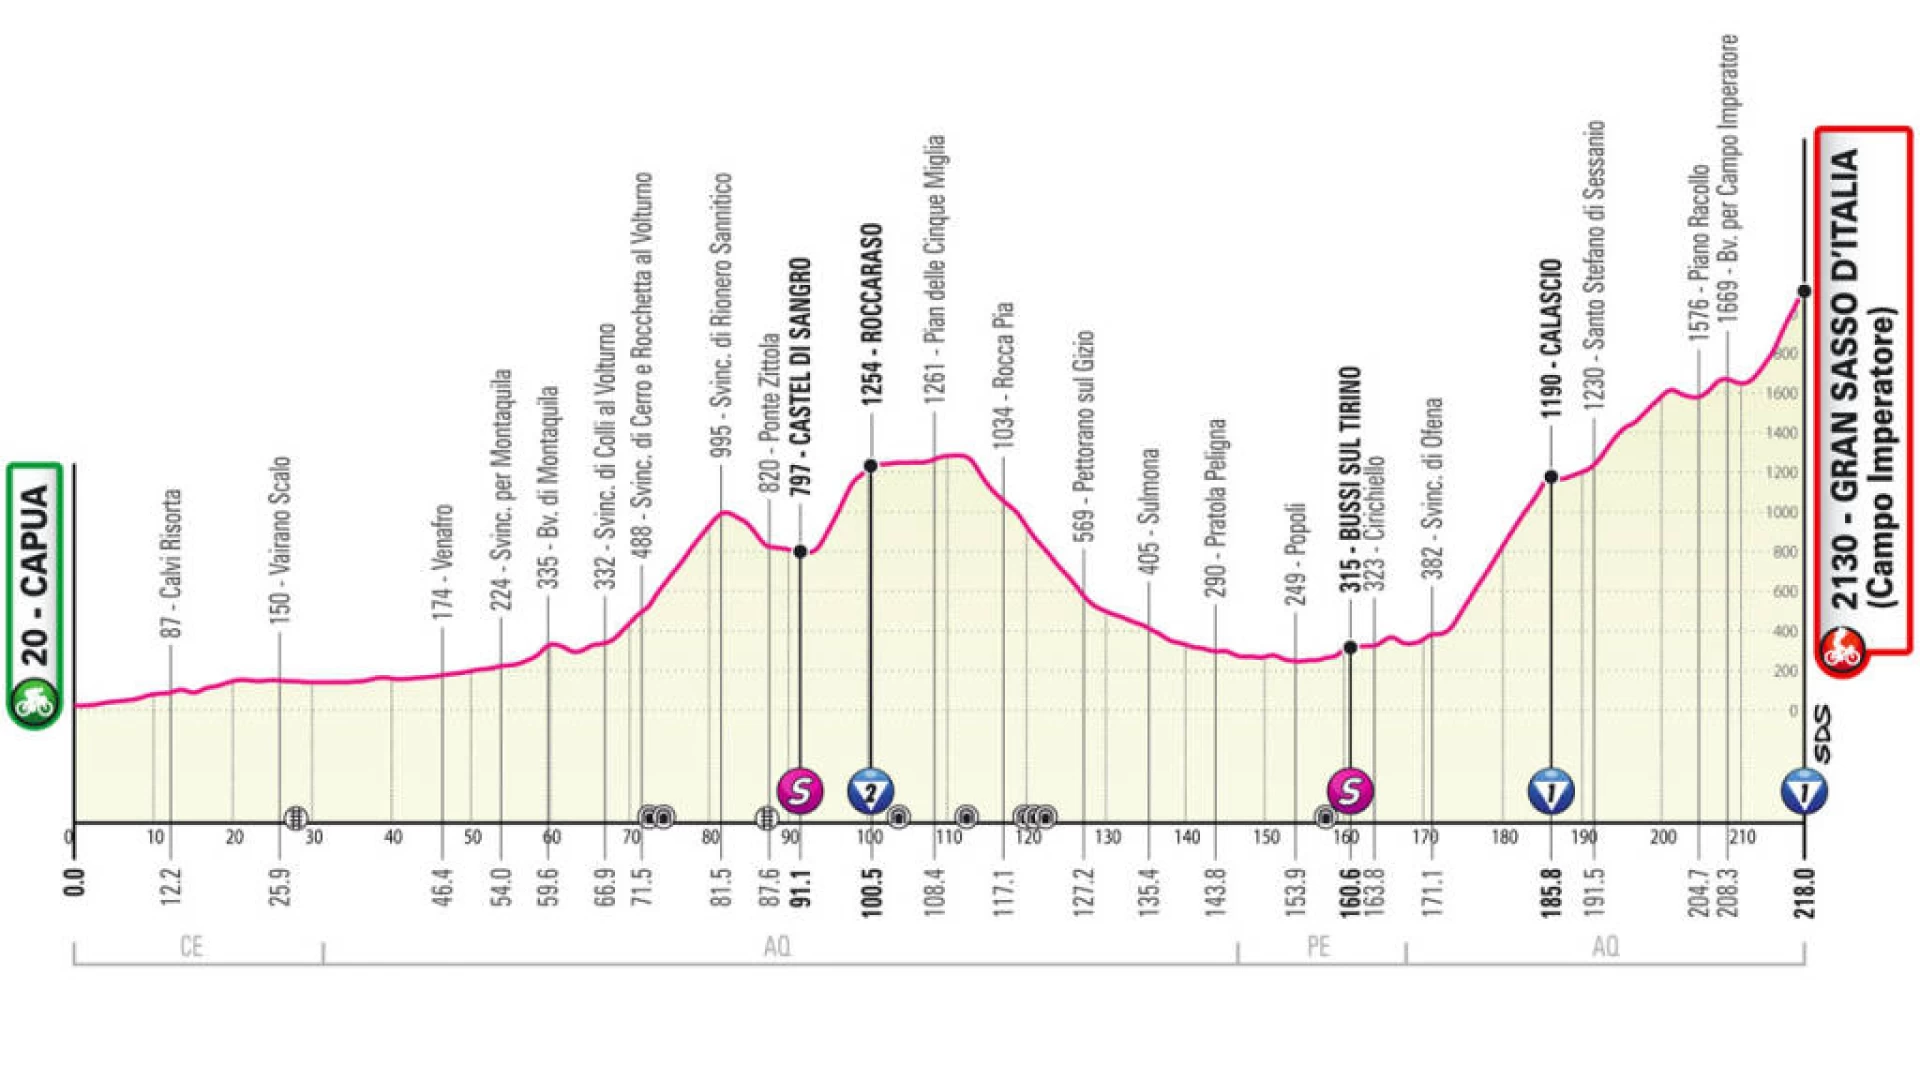 Giro d'Italia: la Carovana Rosa in Molise il 12 maggio. Attraversati diversi comuni. Tappa di montagna da Capua a Campo Imperatore.